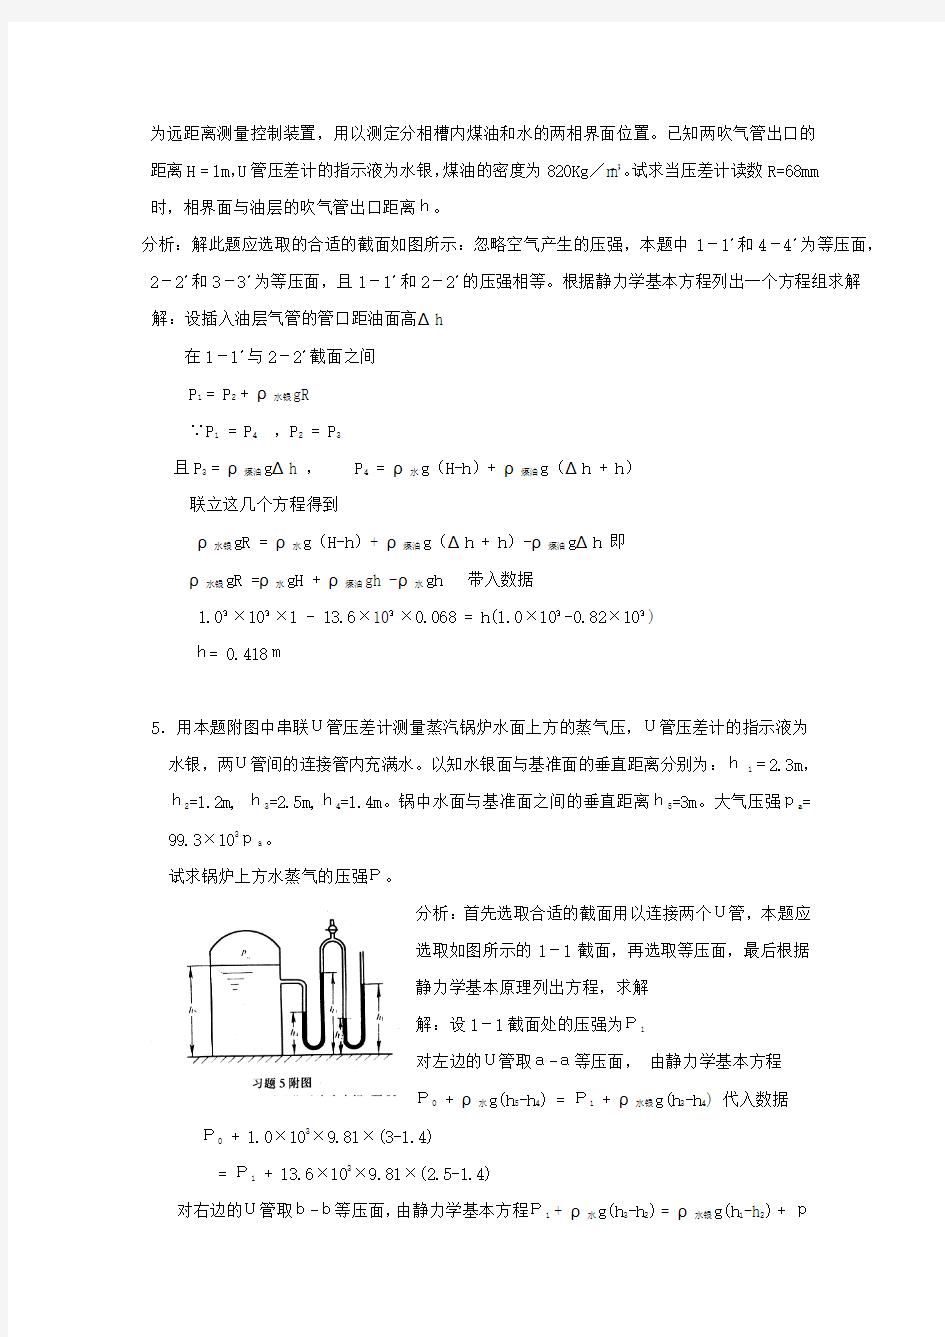 化工原理第二版天津大学贾绍义_夏清版课后习题答案